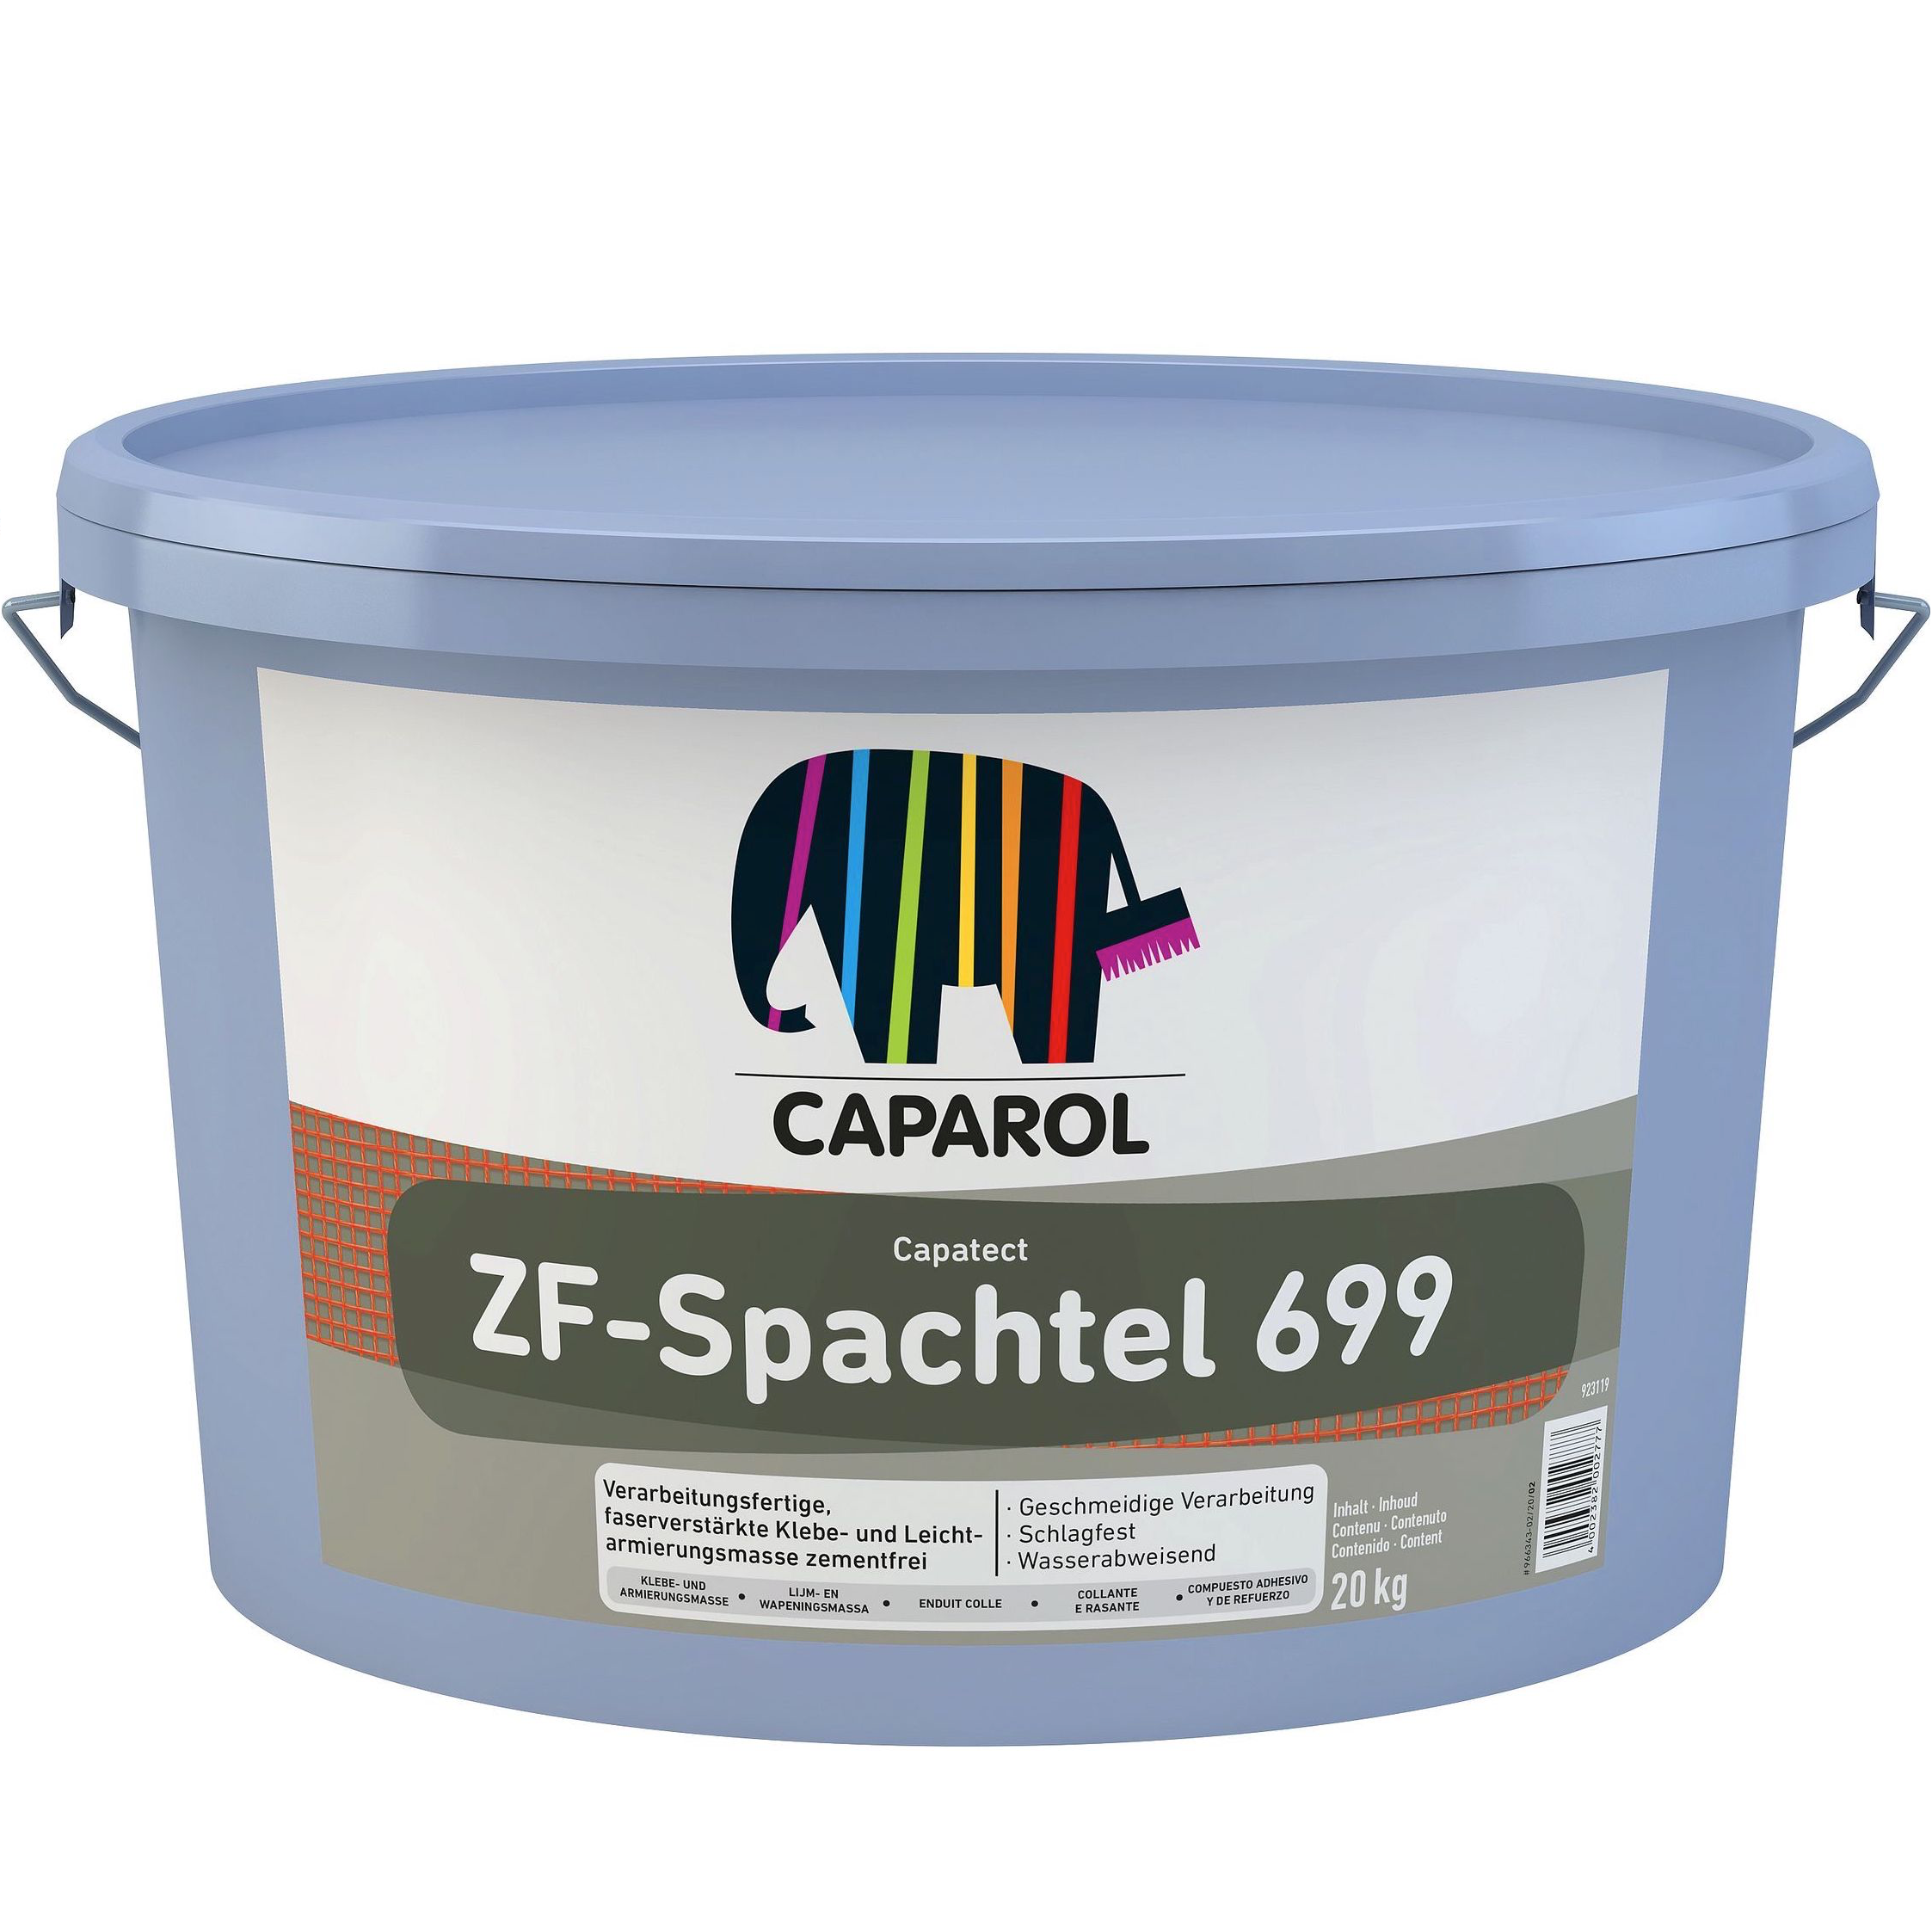 Caparol Capatect ZF-Spachtel 699, 20kg